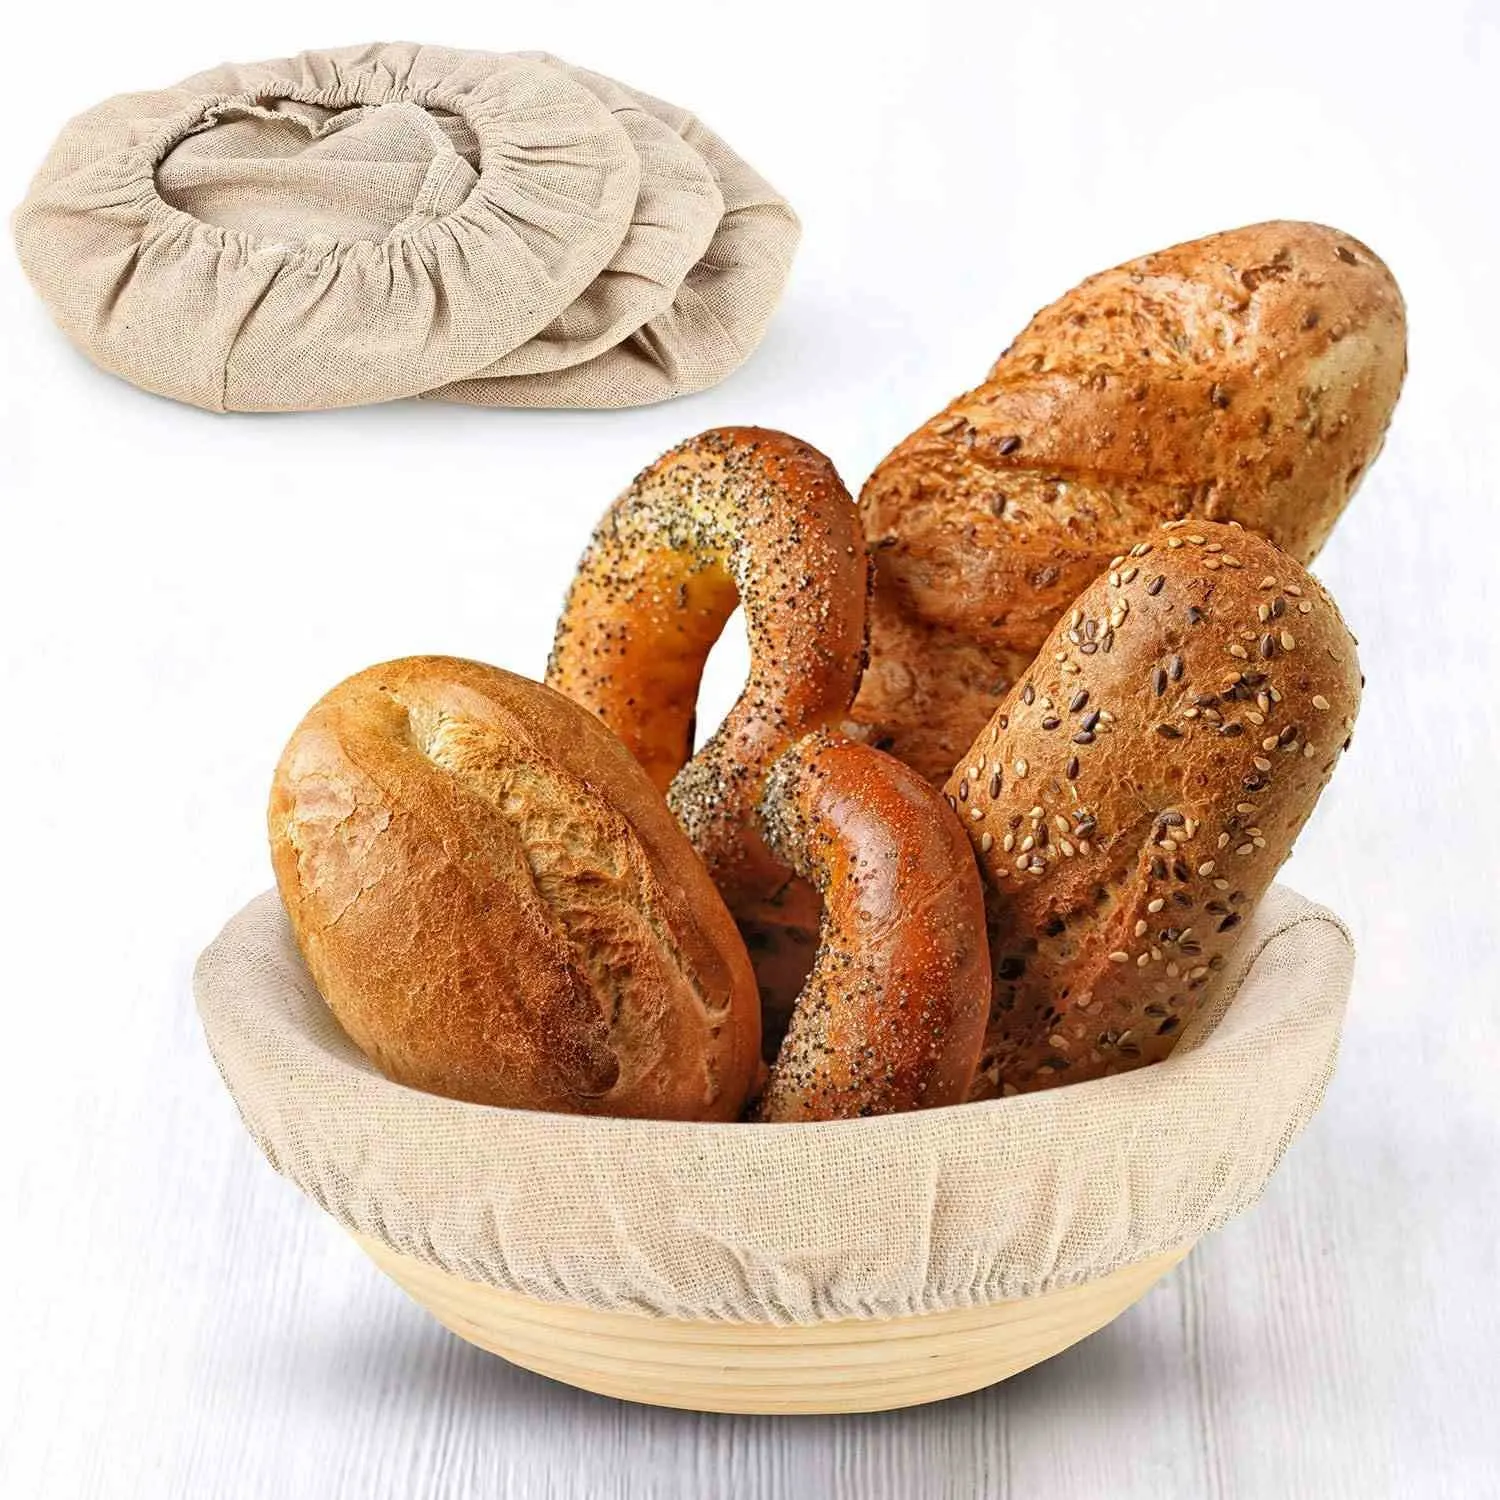 2021 Hot sale cheapest wholesale bread basket linen liner for proofing basket/dough proofing/bread pastry liner